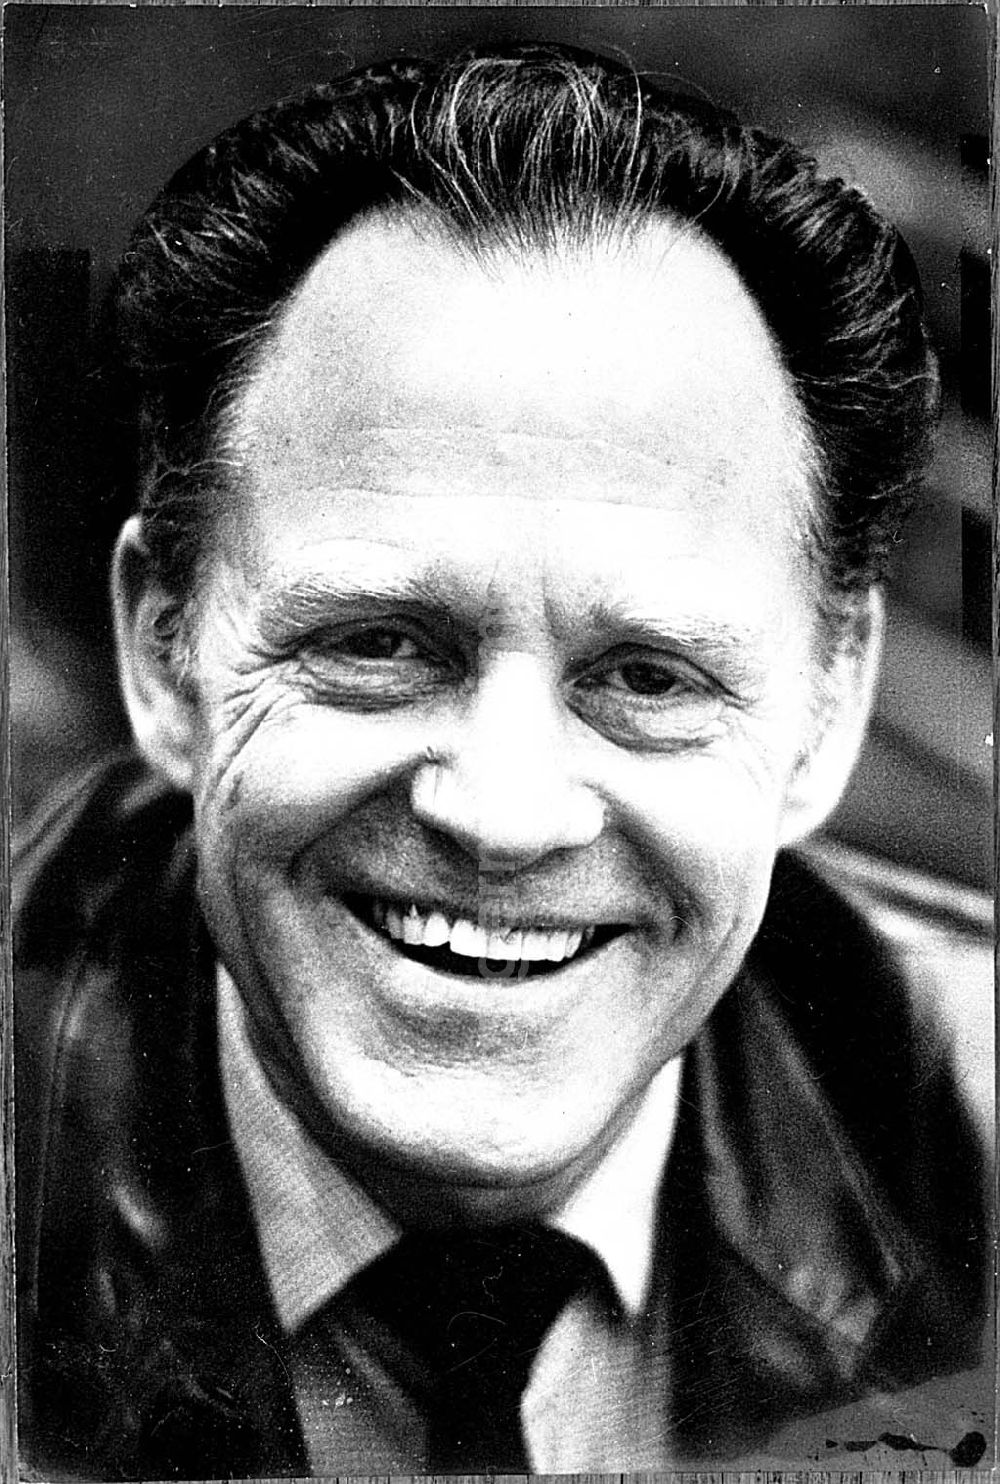 : Mai 1991 Täve Schur (Gustav Adolf Schur)- Portrait geb. 23.2.1931 Heyrothsberge bei Magdeburg Spitzensportler (Radrennfahrer) der DDR, Trainer